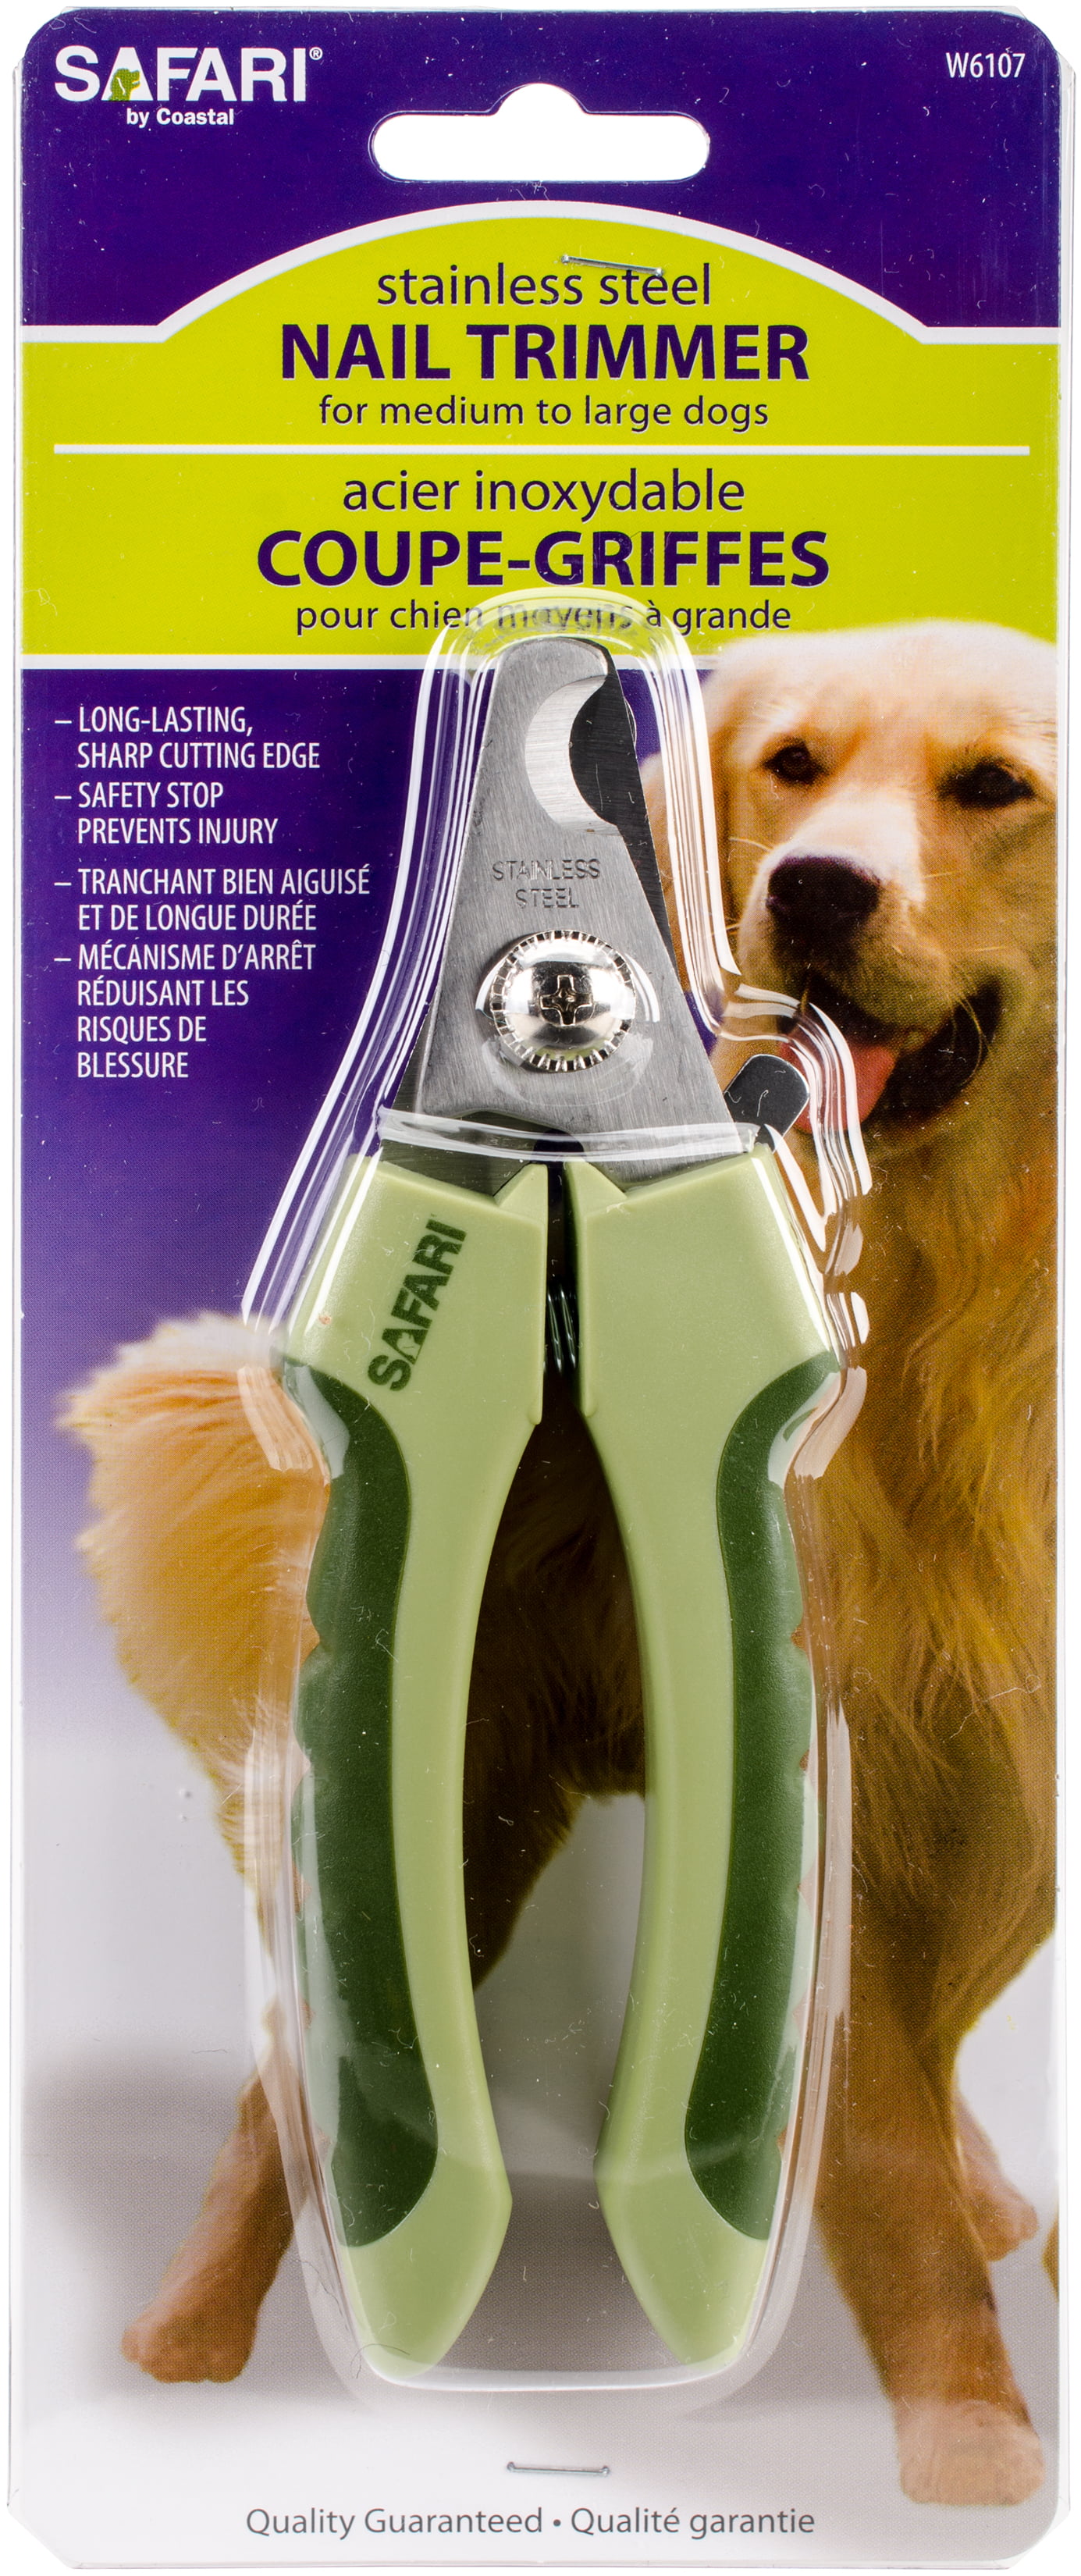 safe dog nail trimmer